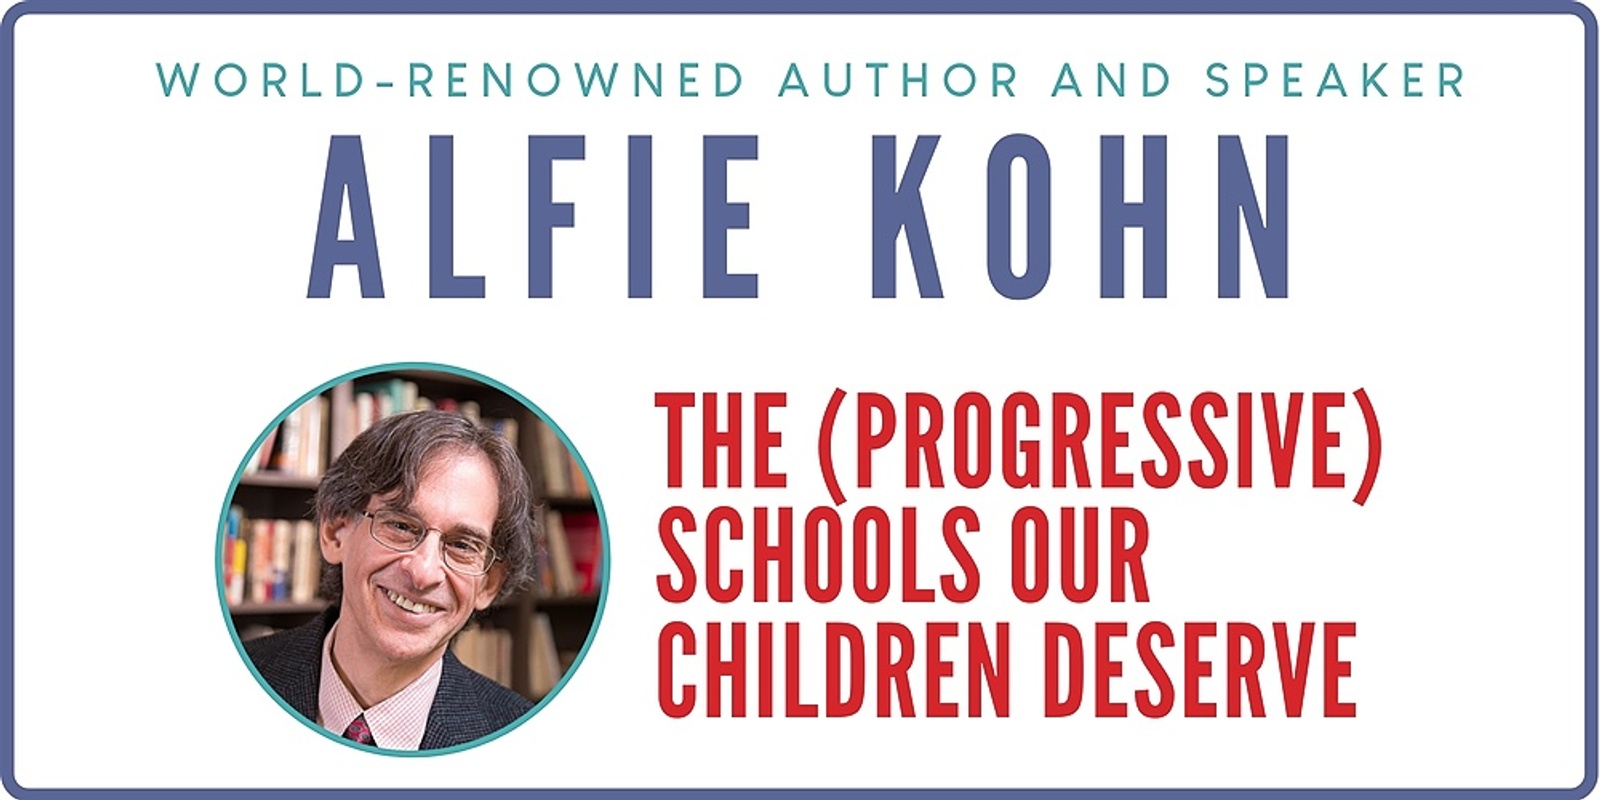 Banner image for ALFIE KOHN: The (Progressive) Schools Our Children Deserve.